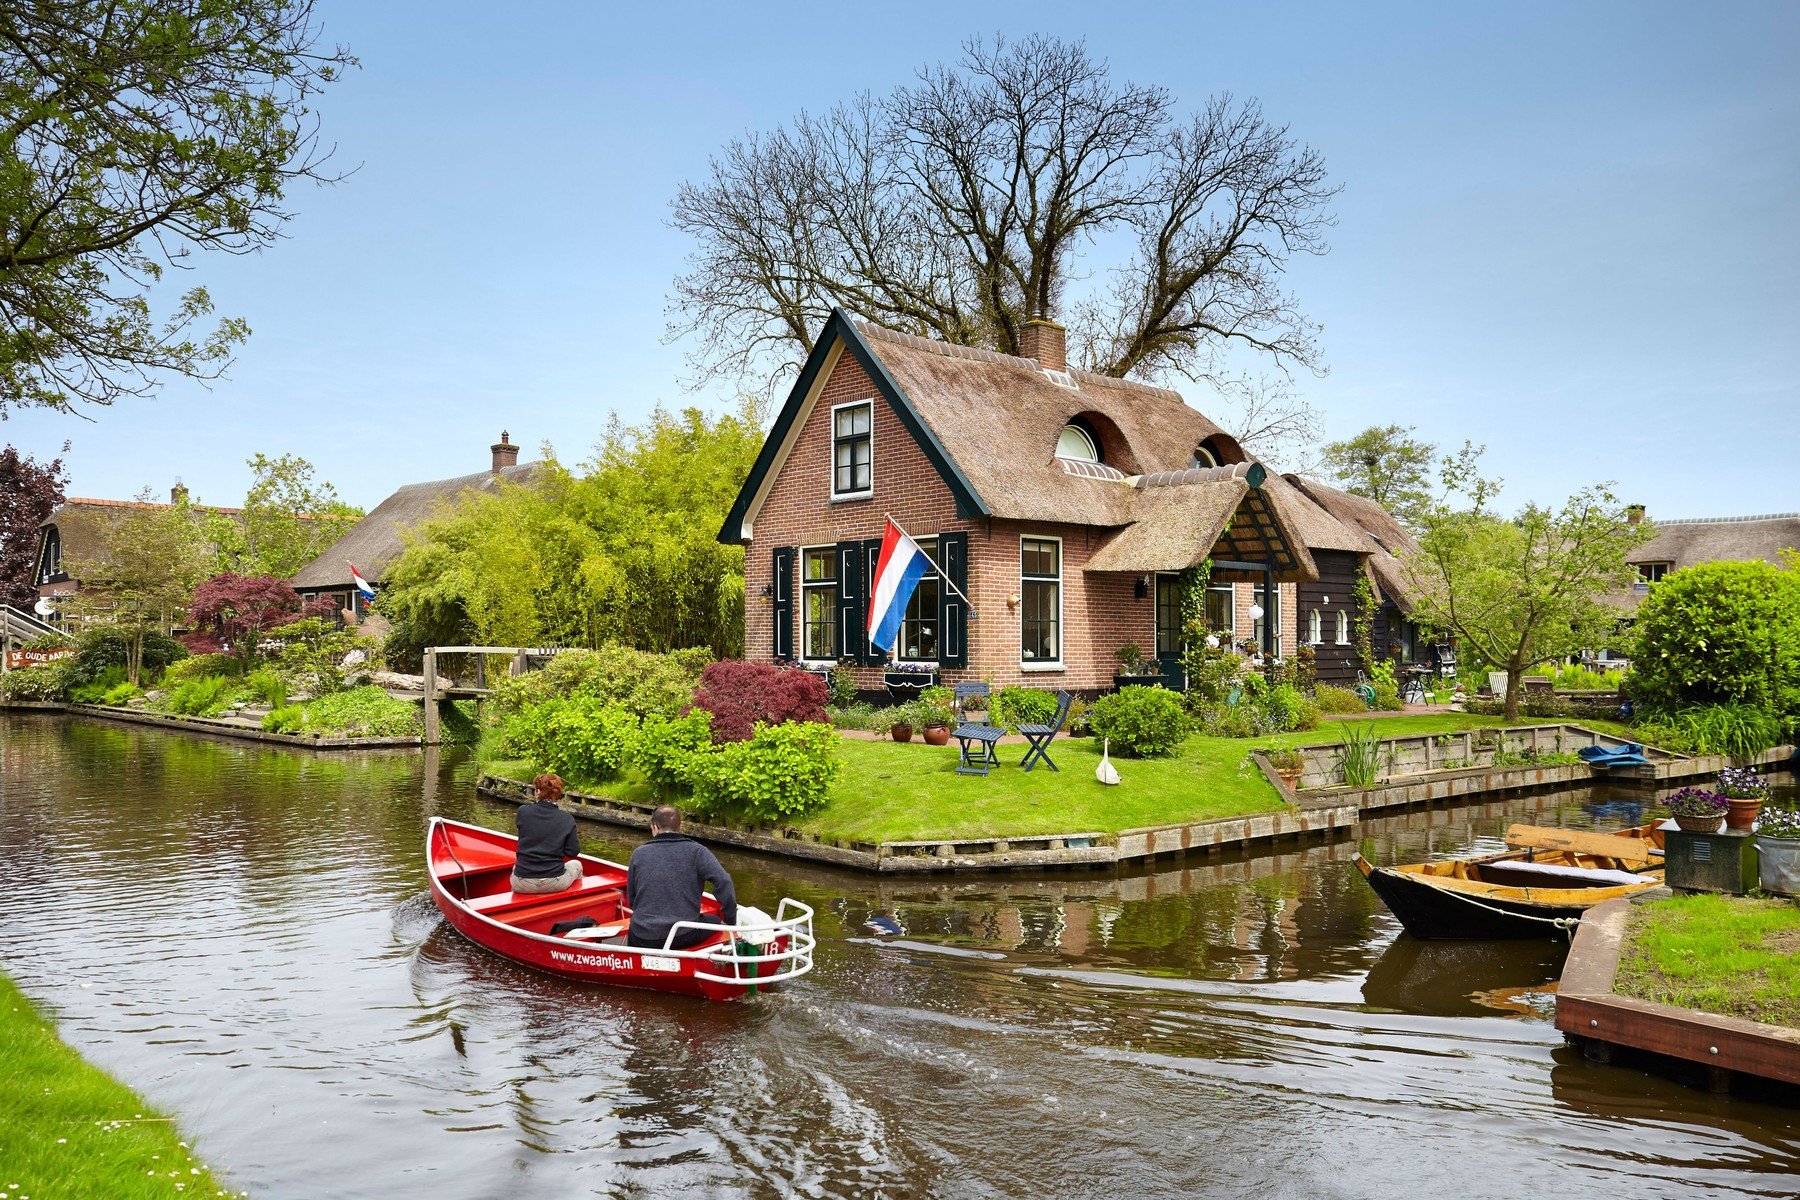 Valóság vagy mesefilm? Ez a holland kis falu valódi mesébe illő hely, amit látnod kell